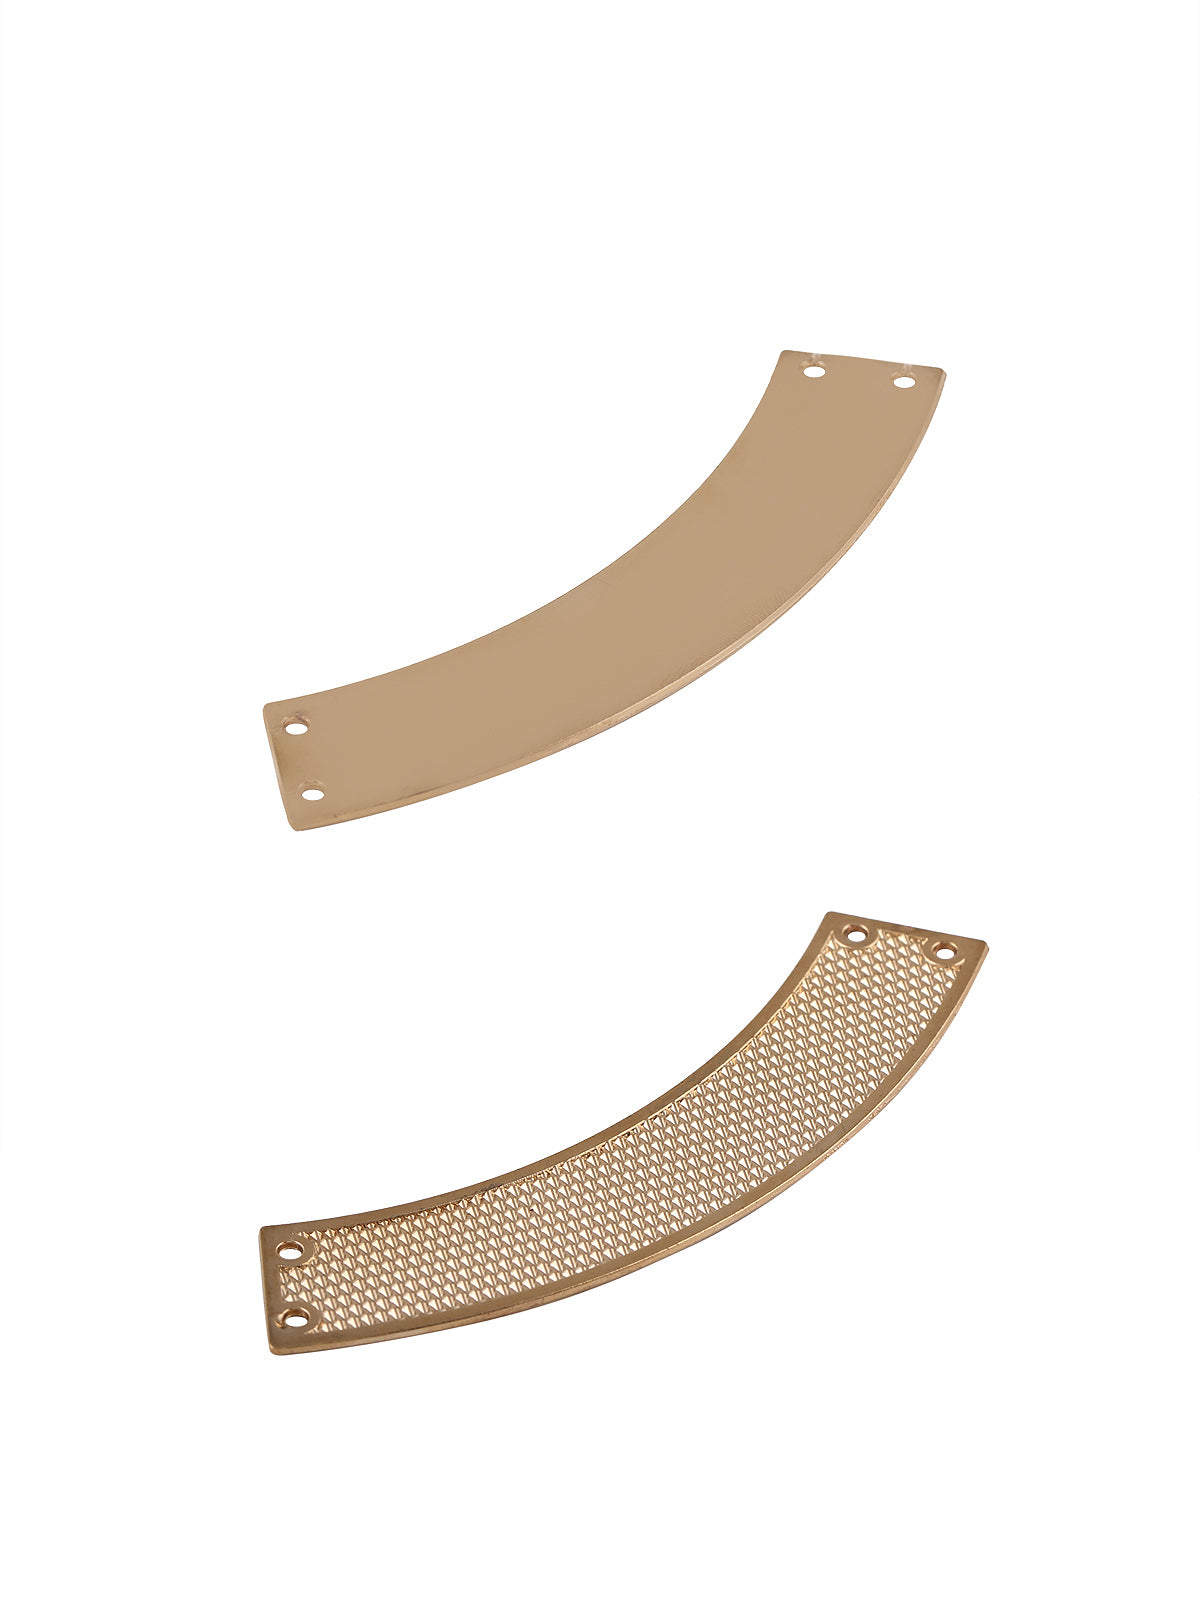 Simple Yet Elegant Curved Design Neckline in Golden Color